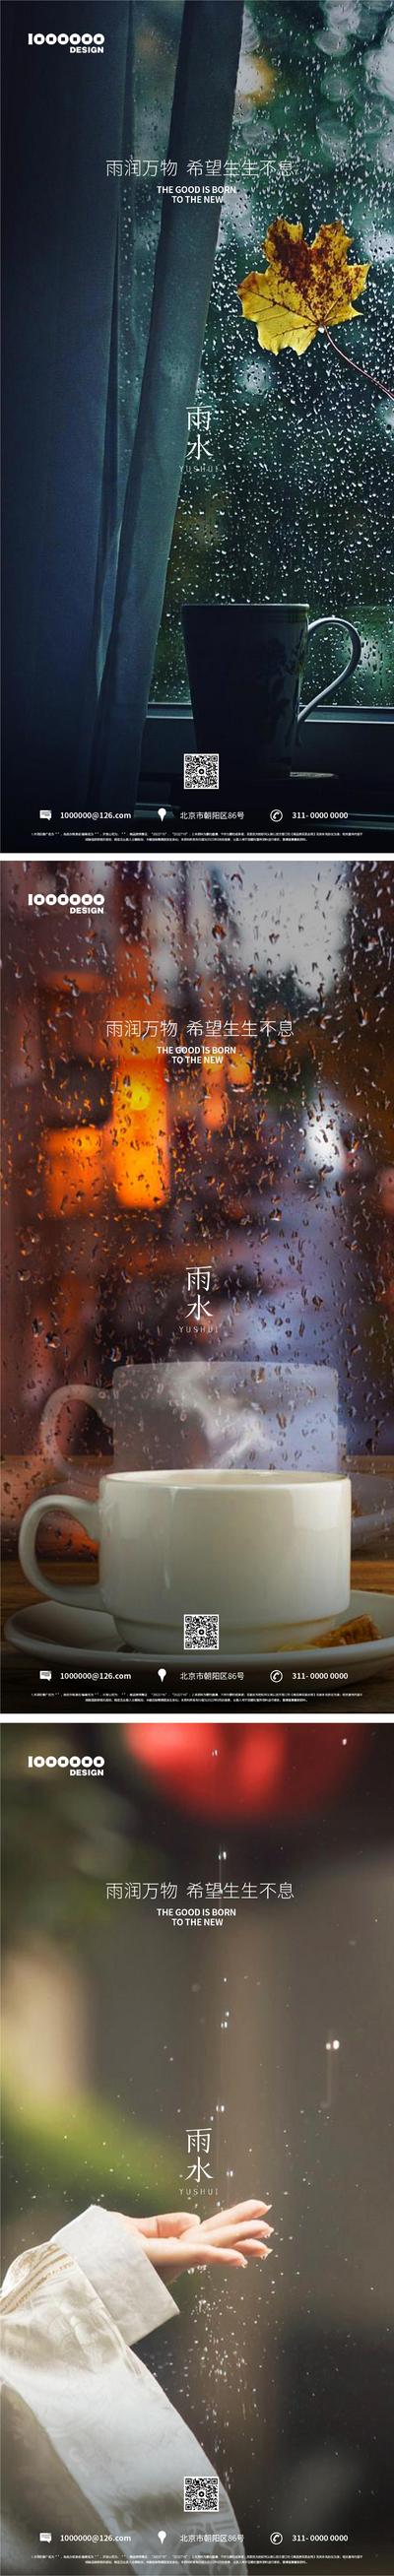 南门网 海报 二十四节气 雨水 咖啡 雨伞 室内 窗户 系列